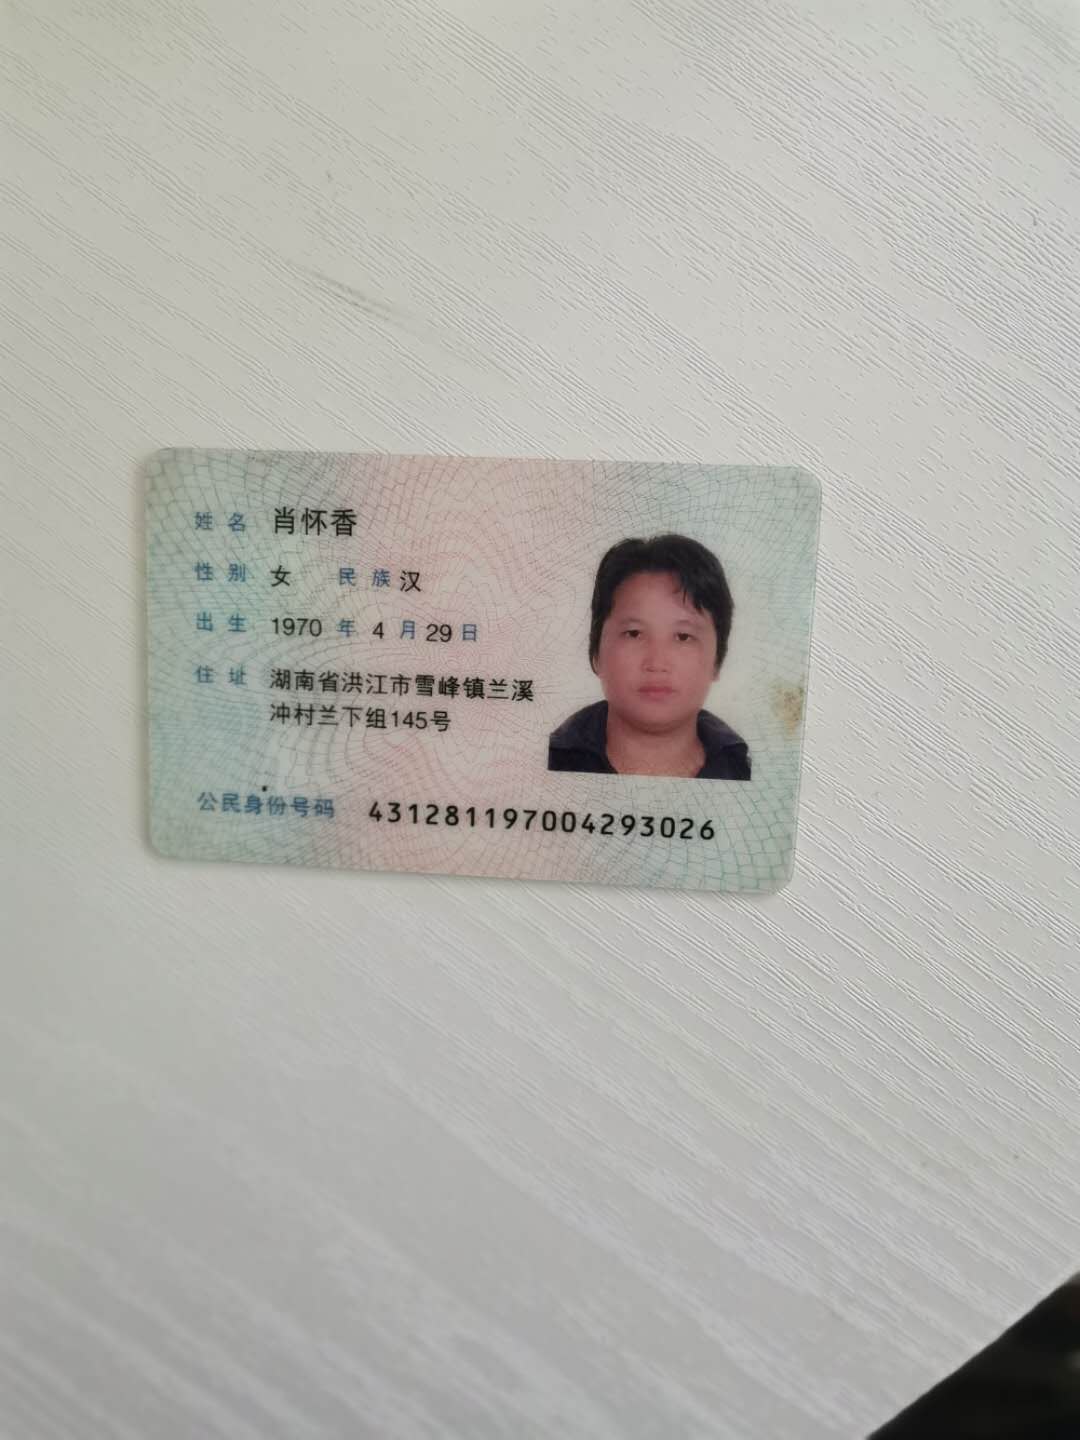 居民身份证图片浏览-居民身份证图片下载 - 酷吧图库